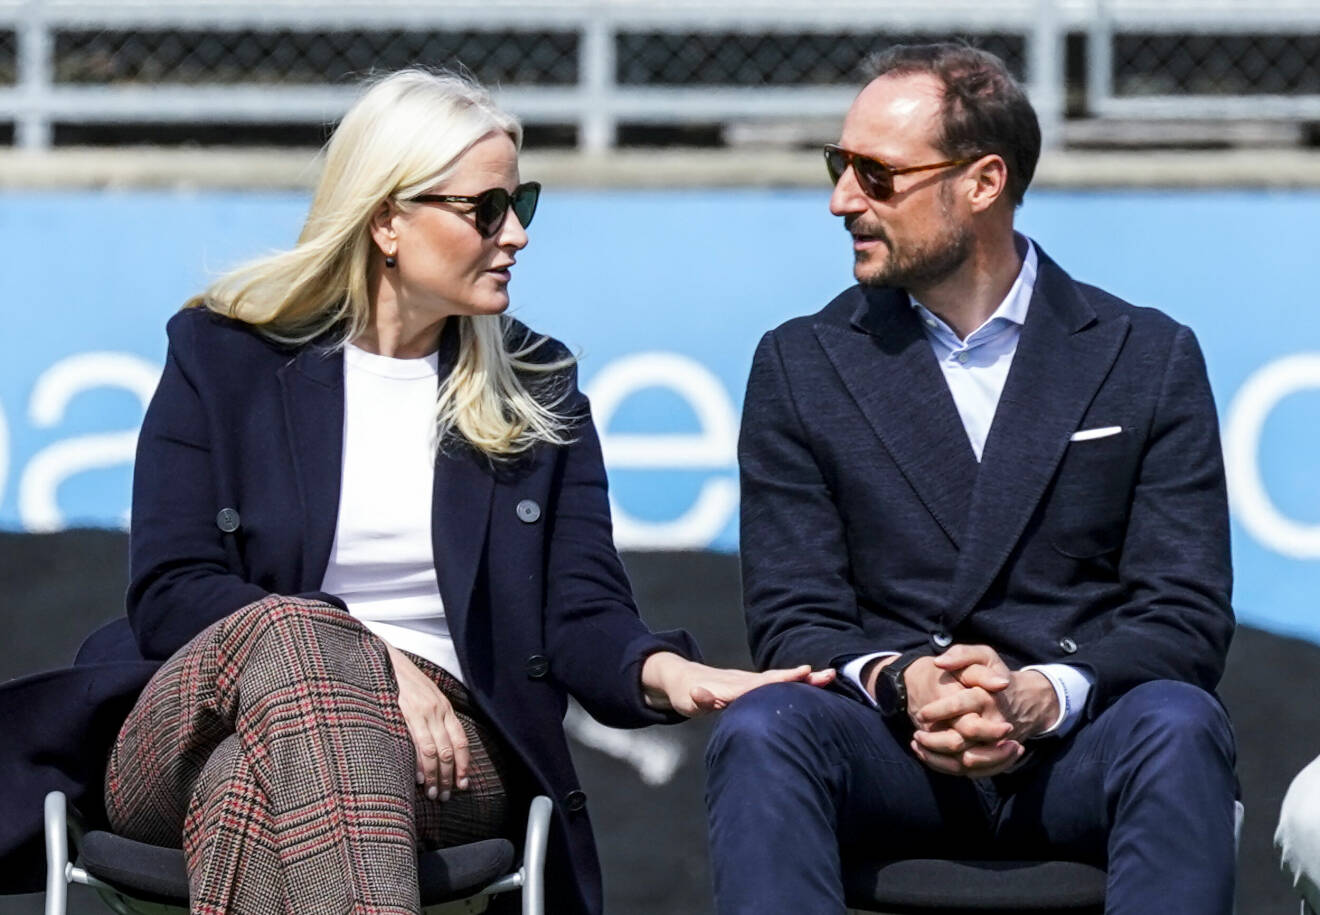 Mette-Marit och Haakon i solglasögon som tittar på varandra